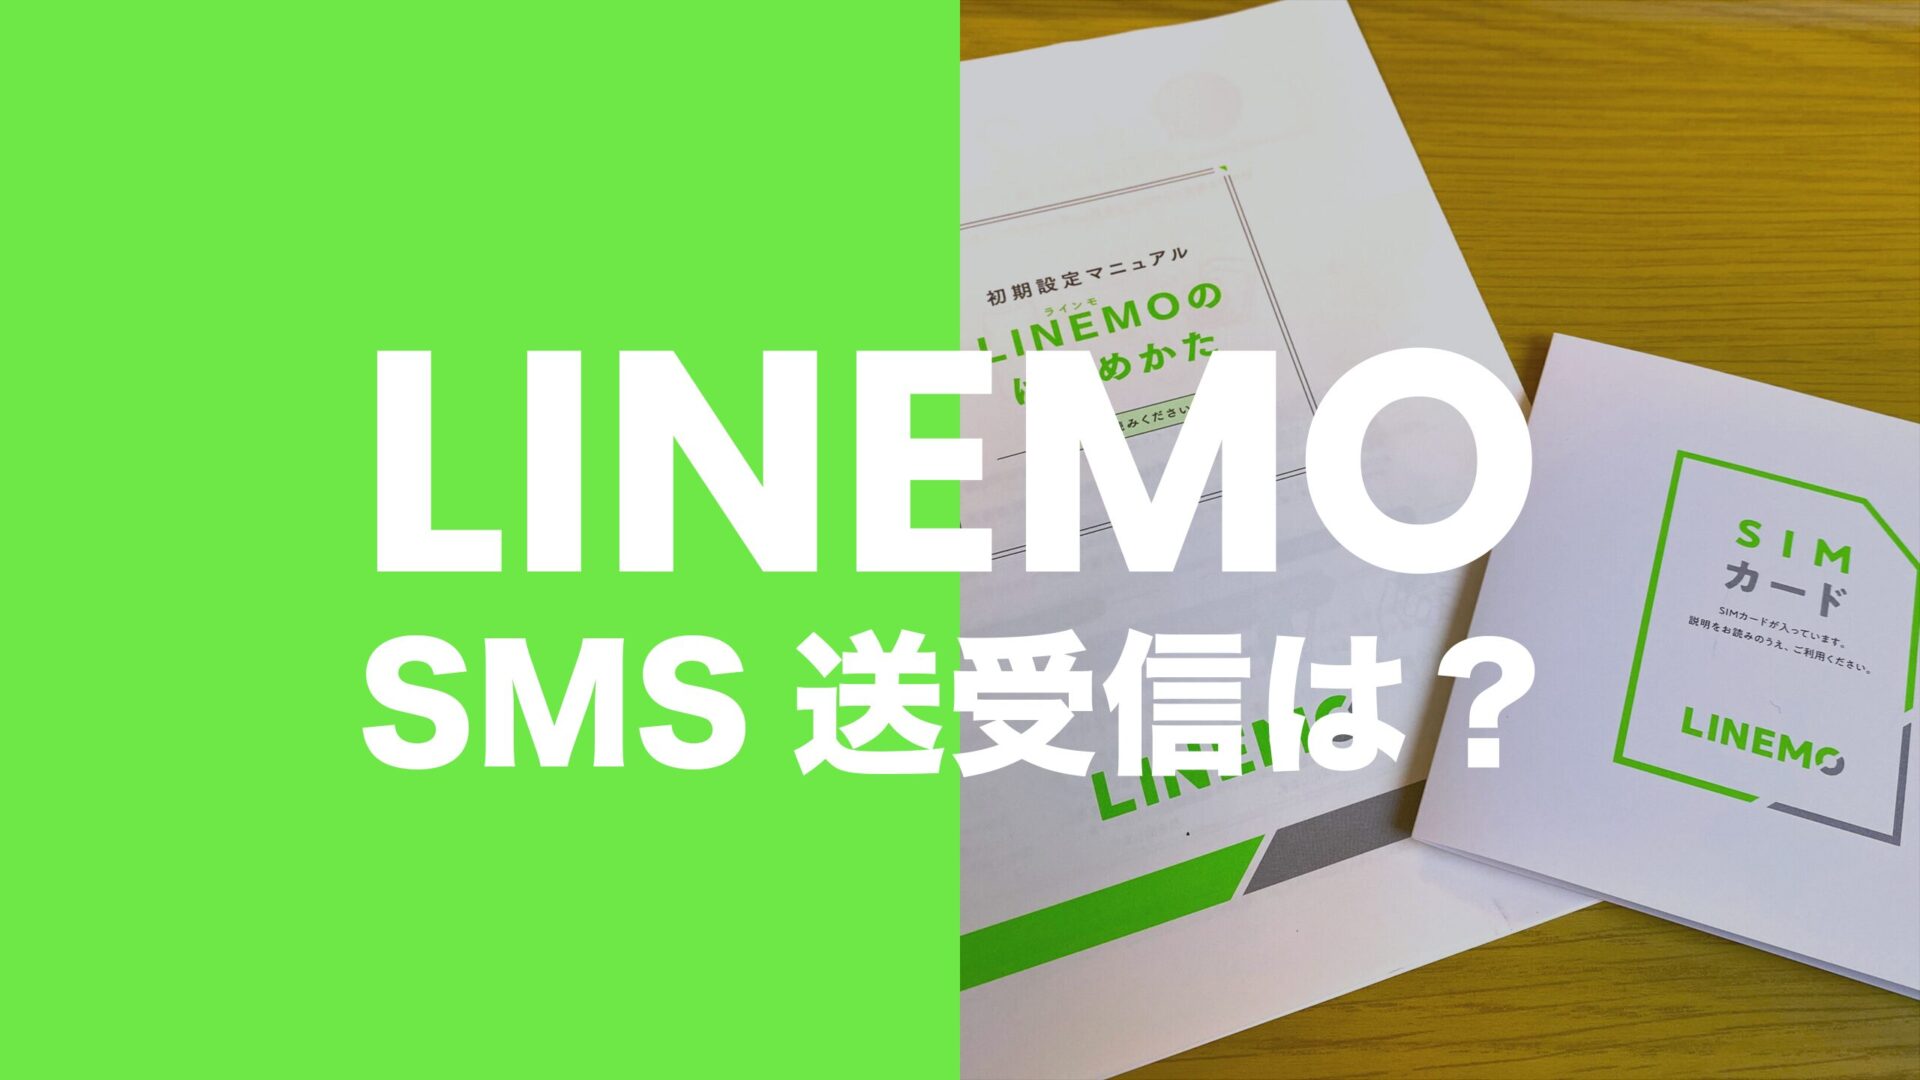 LINEMO(ラインモ)はSMSの受信無料で送信機能も使える。【ショートメッセージ】のサムネイル画像